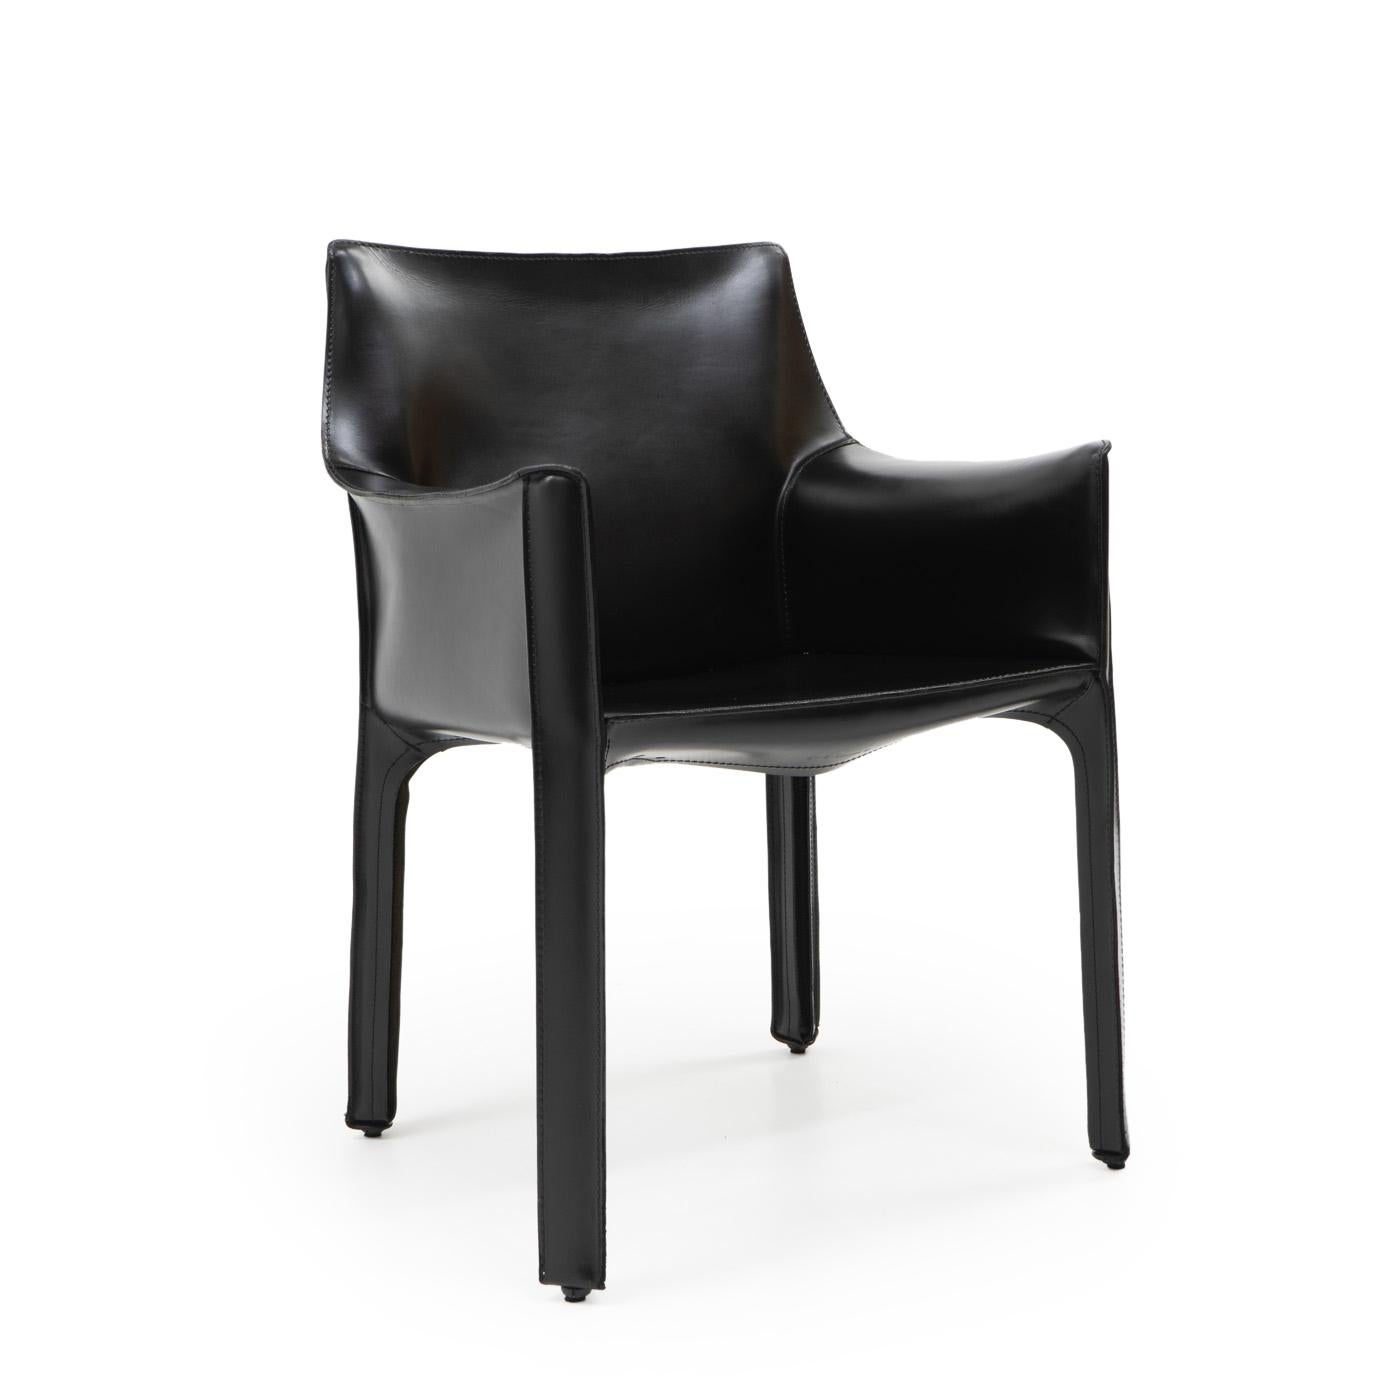 Fauteuil Cab 413 en cuir noir de Mario Bellini pour Cassina :

La chaise Cab est constituée d'un cadre tubulaire sur lequel est posé un épais cuir de selle ; la peau de cuir est maintenue en place par des fermetures à glissière sur les pieds